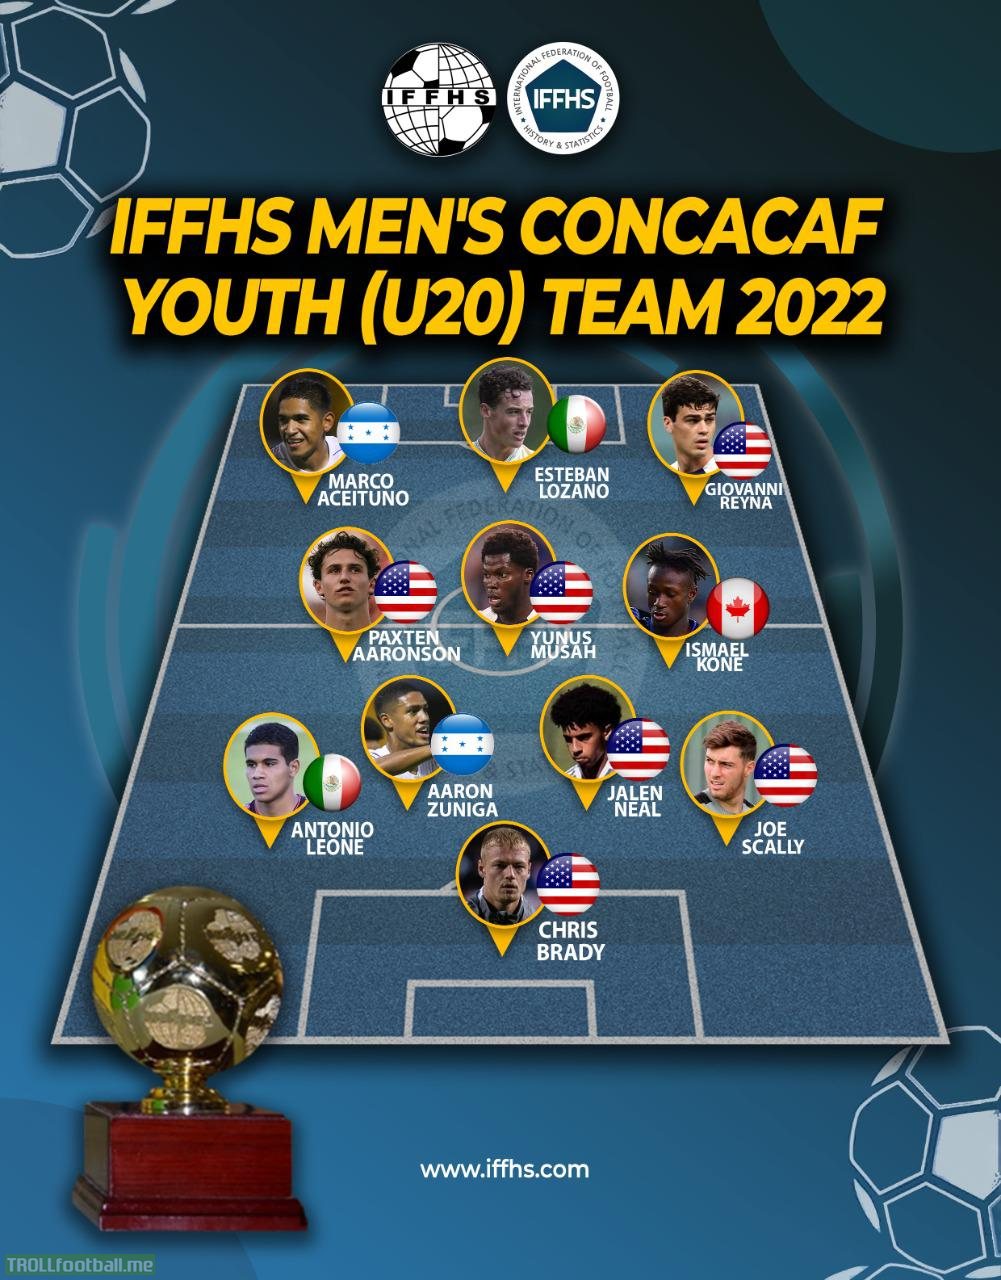 IFFHS Men's CONCACAF U20 Team 2022